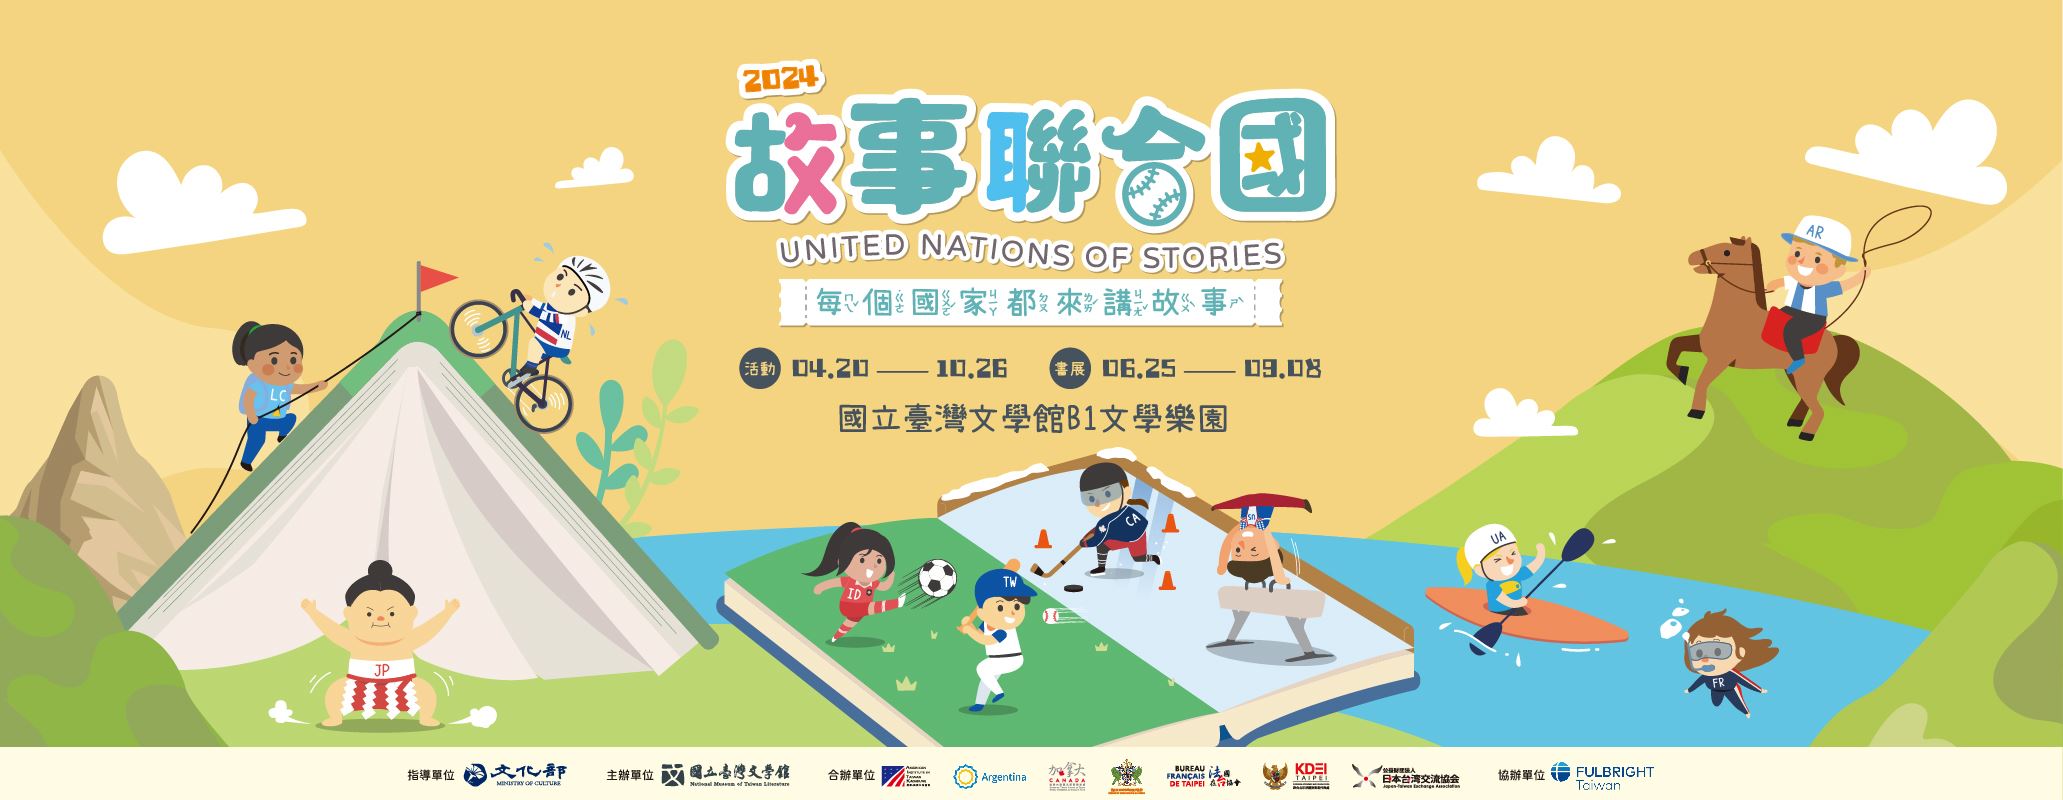 国立台湾文学館、「United Nations of Stories」がスタート